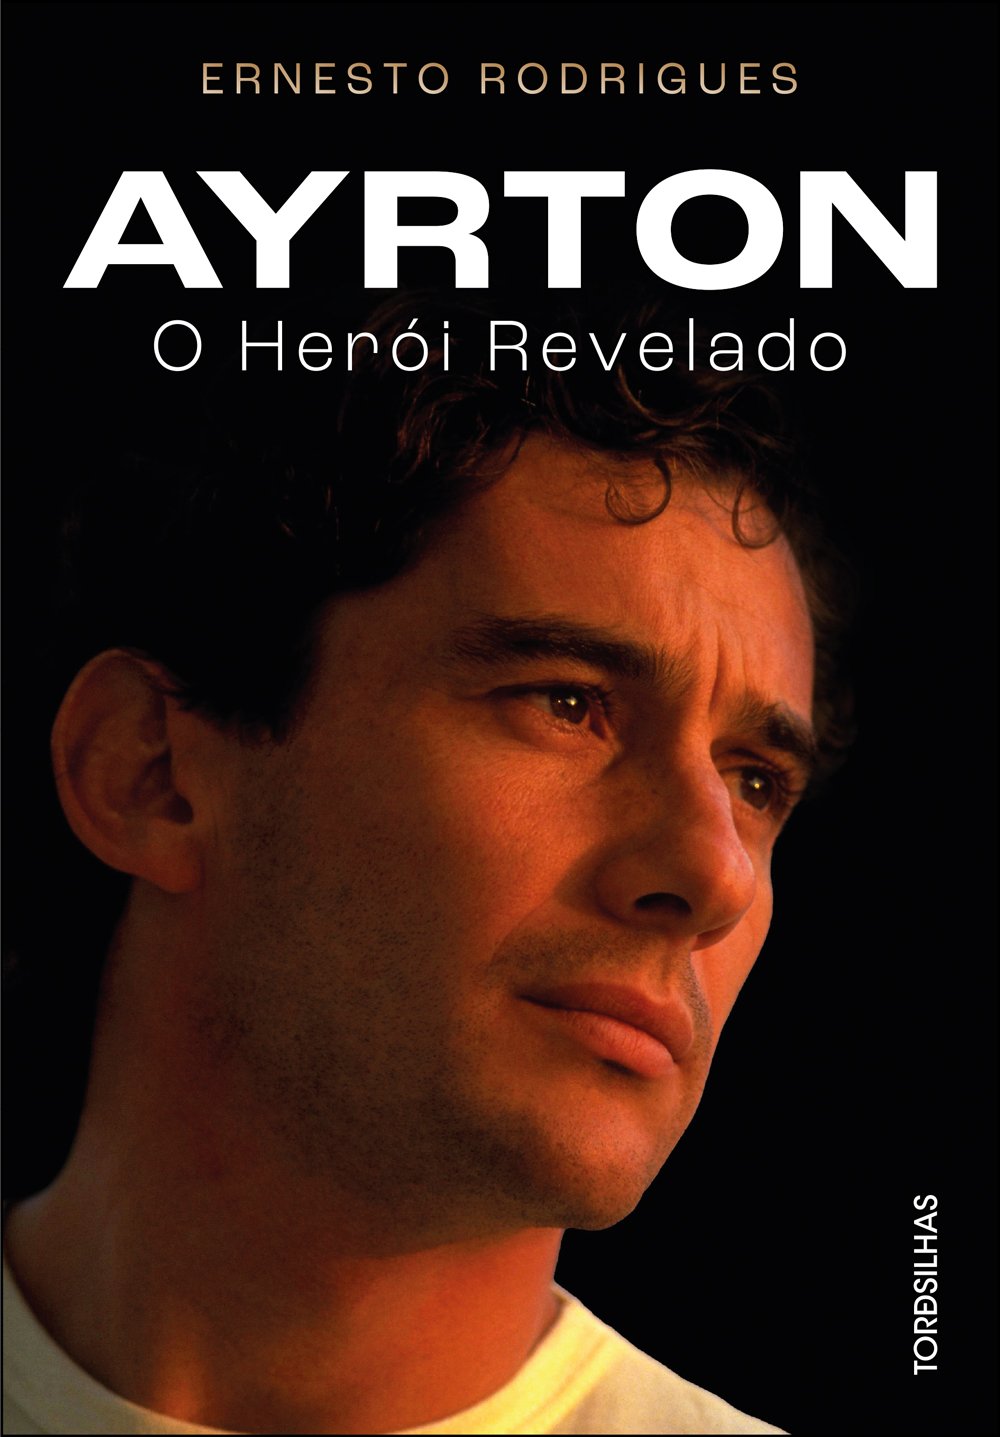 Senna, 30 anos de saudade: Livro homenageia o herói eterno